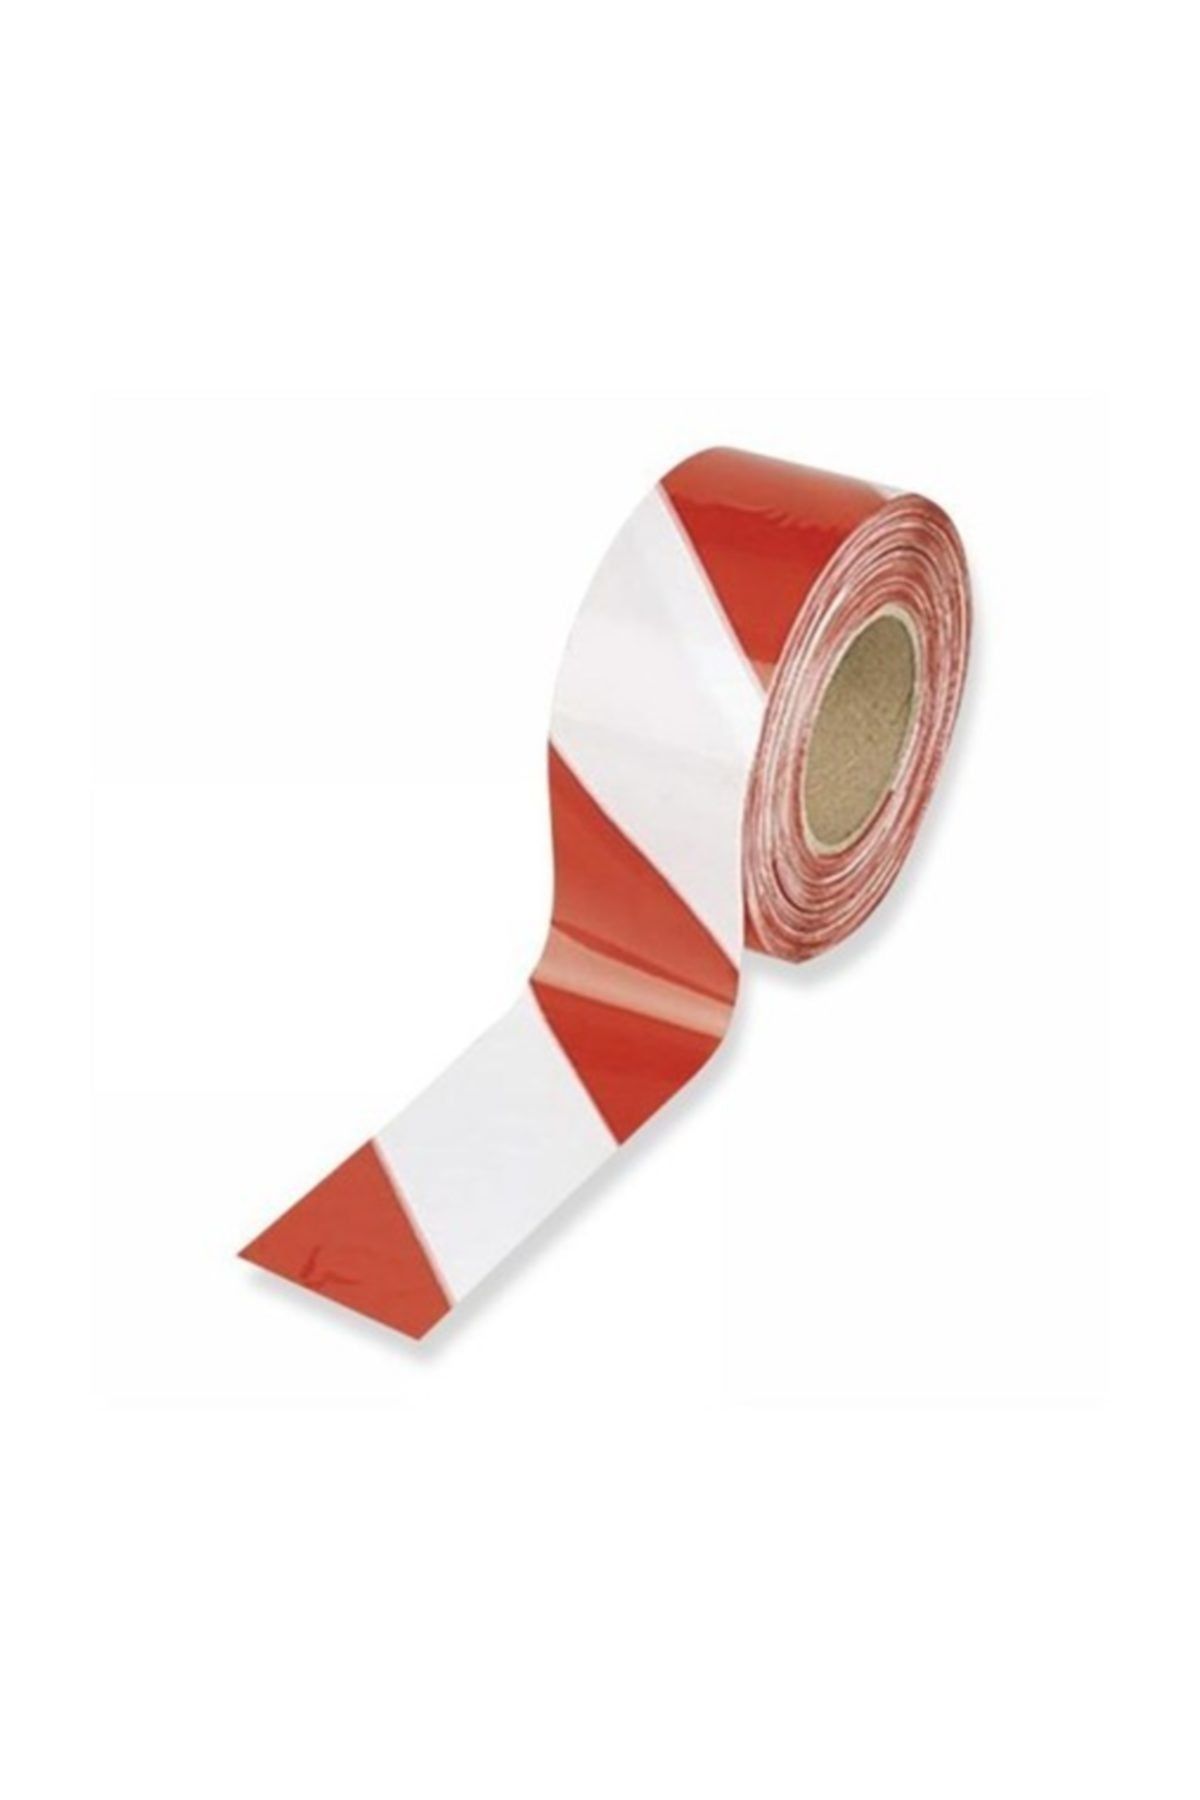 Gereksiz Şeyler Kırmızı Beyaz Ikaz Bandı - Emniyet Şeridi - Iş Güvenliği Şeridi- 1 Adet 180 Metre